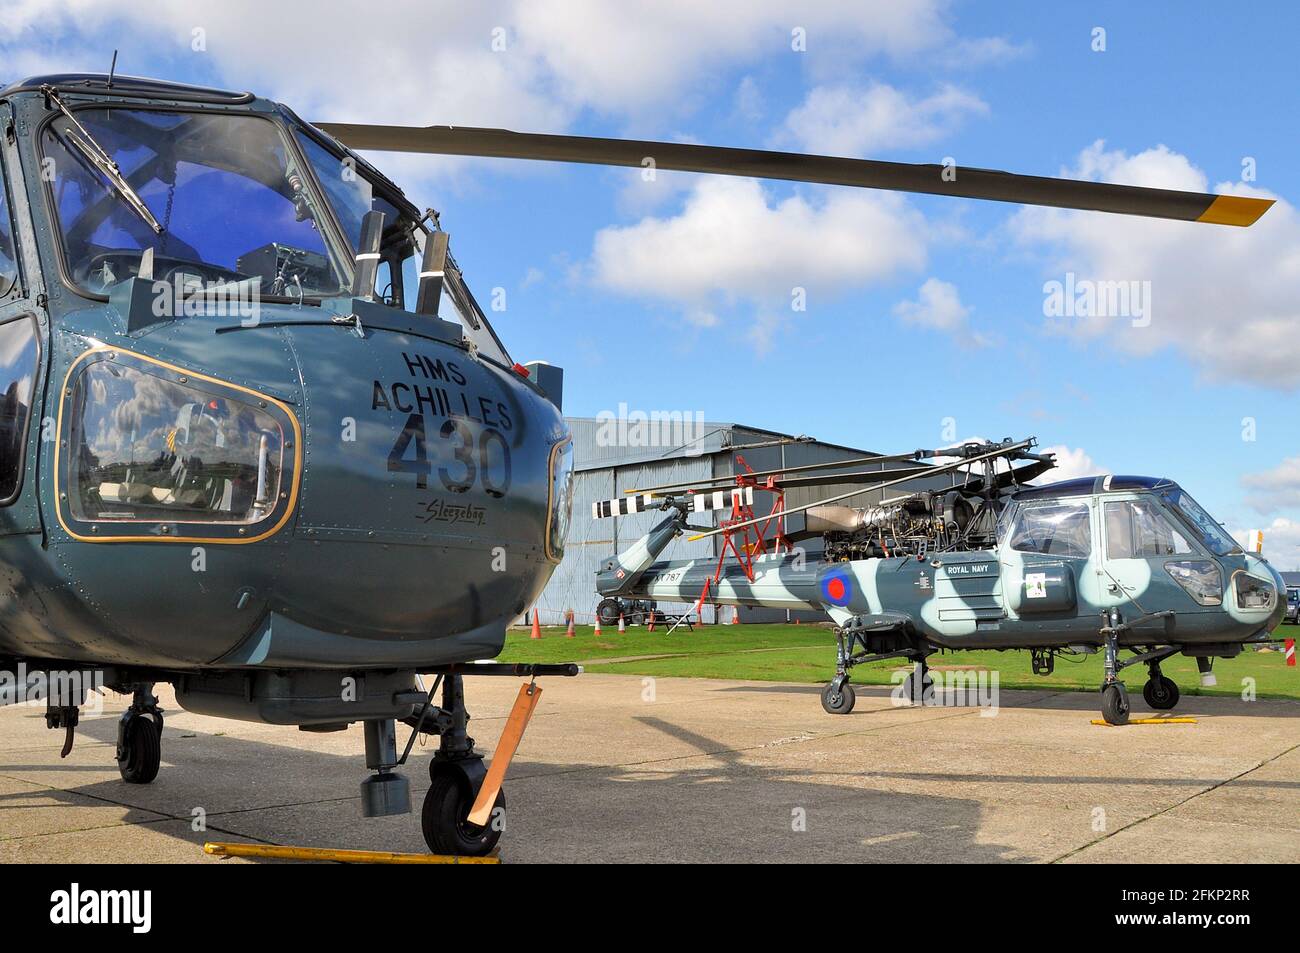 Des hélicoptères Westland Wasp à North Weald, Essex, Royaume-Uni. Hélicoptères classiques vintage. Ancien hélicoptère militaire de la Marine royale Banque D'Images